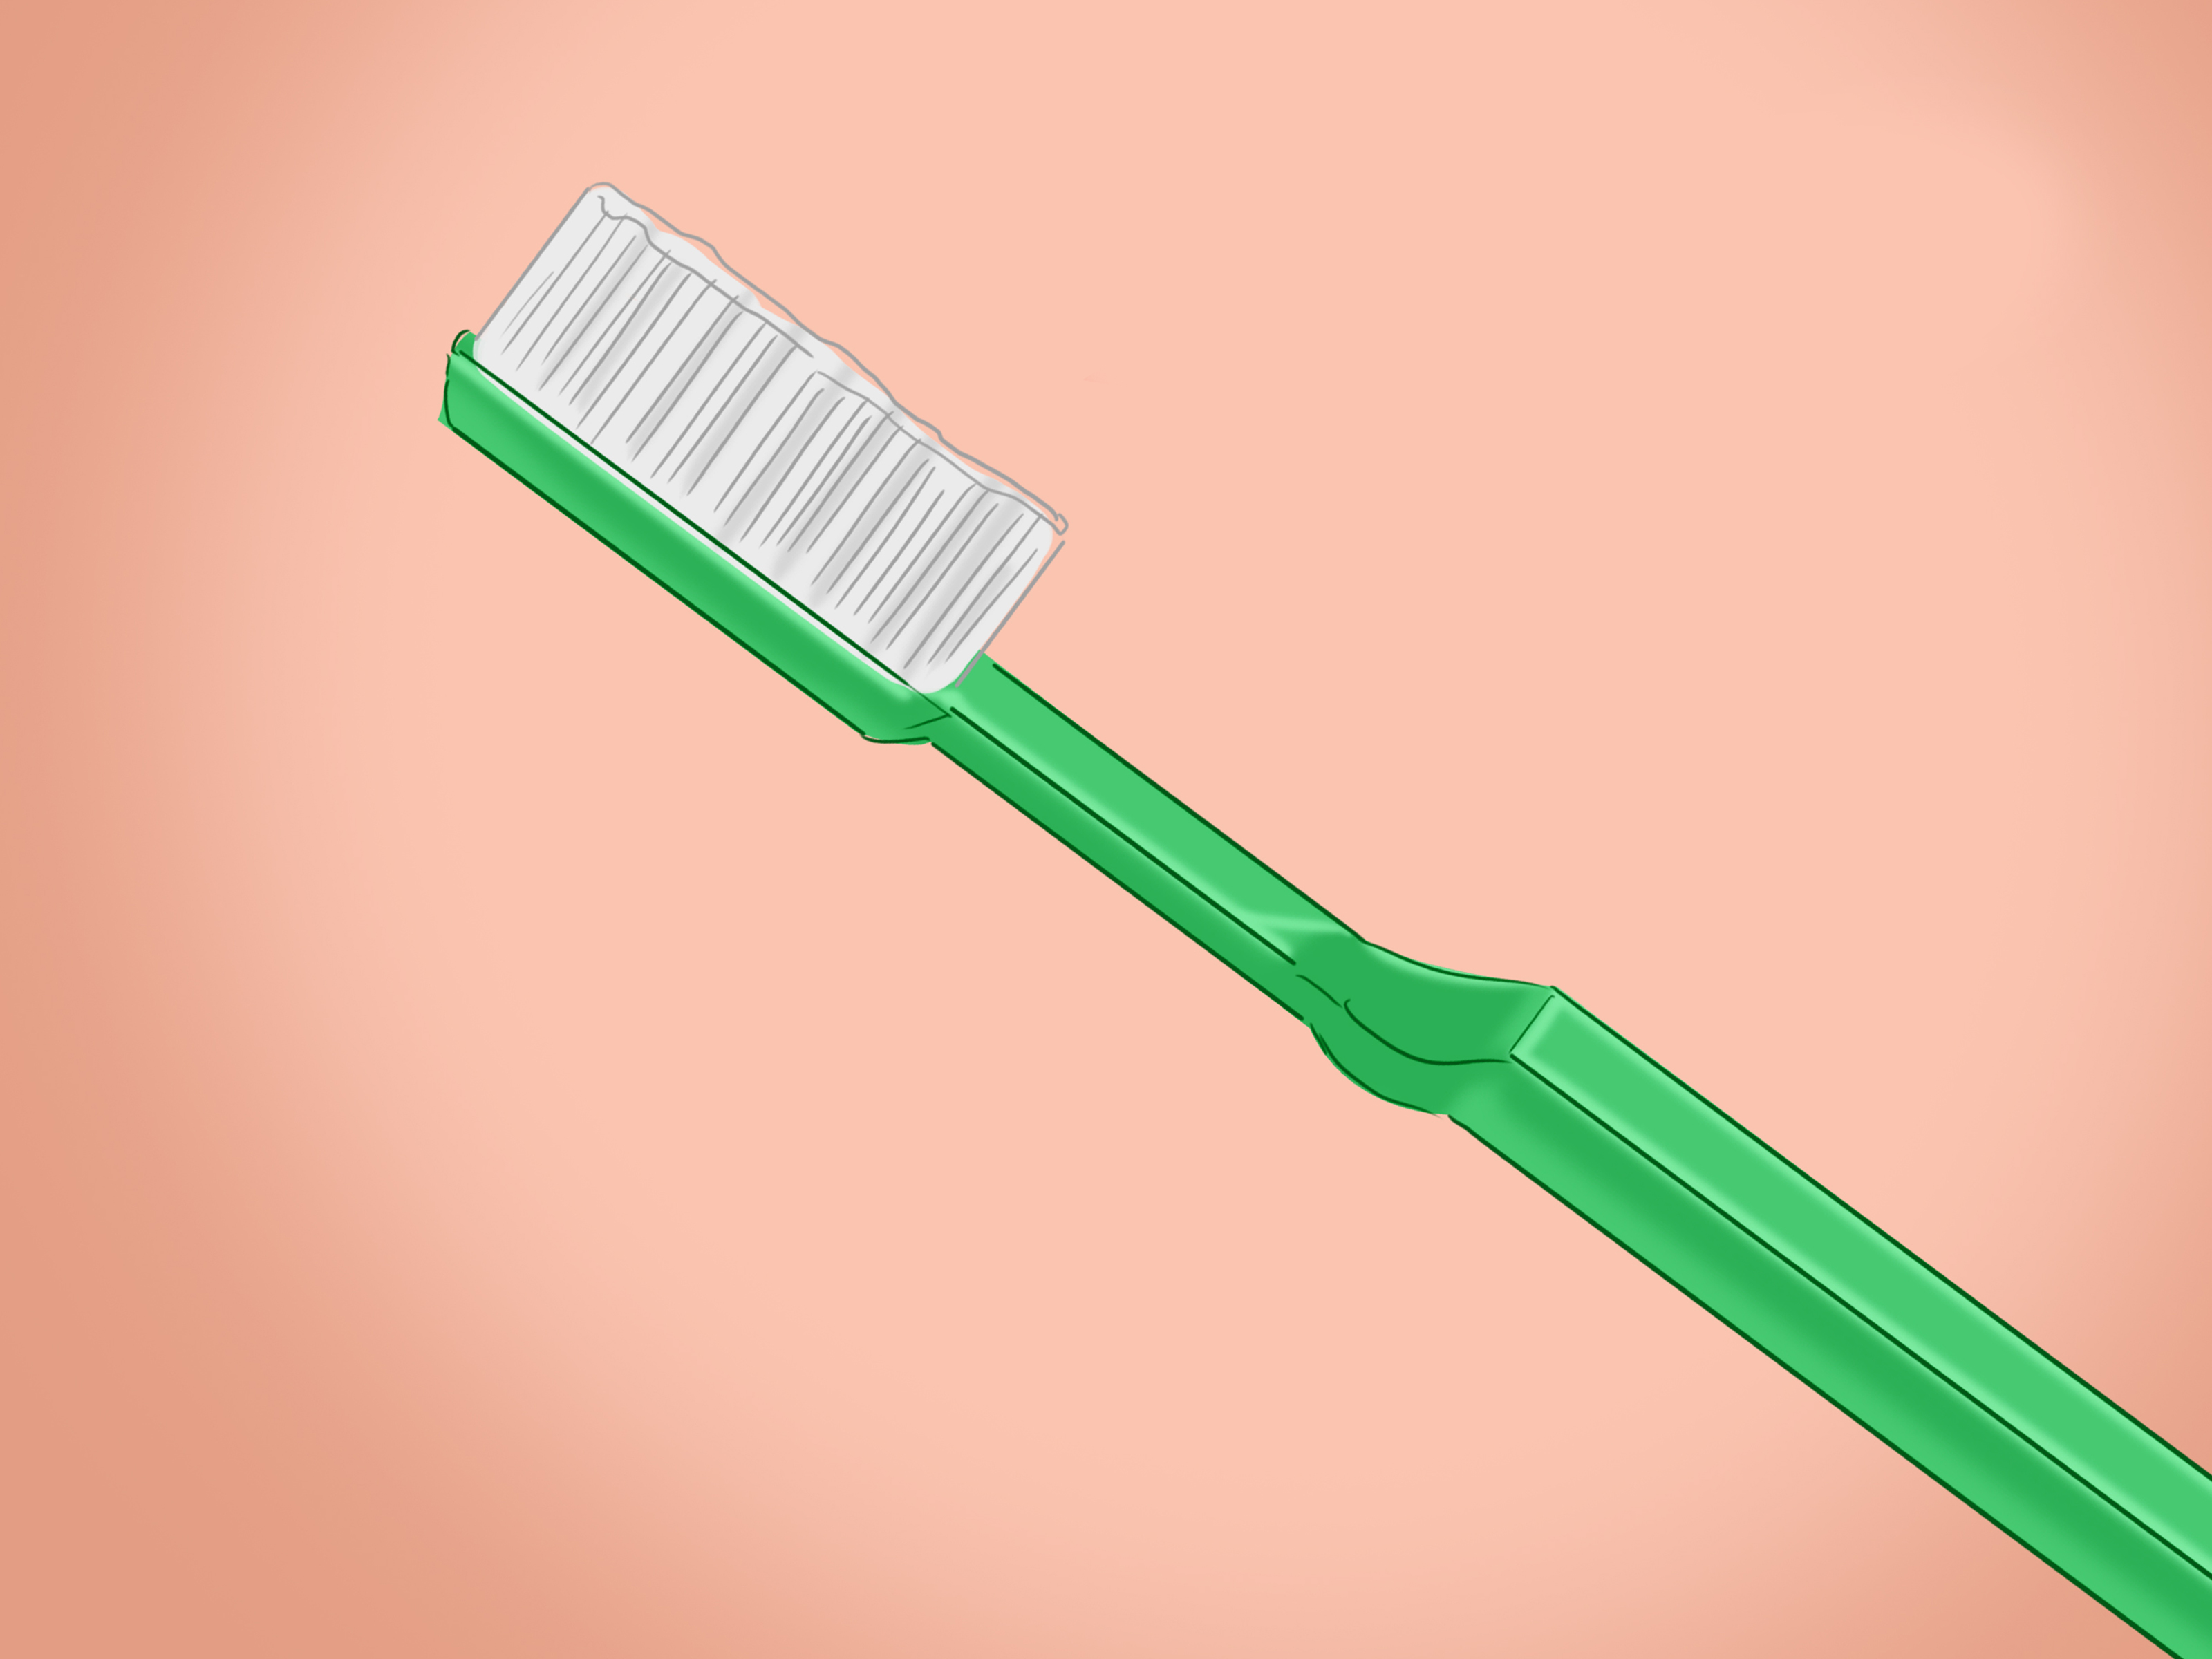 Desligue o telefone.
Use um palito de dente ou uma escova de cerdas macias para remover sujeira ou detritos da porta de carregamento.